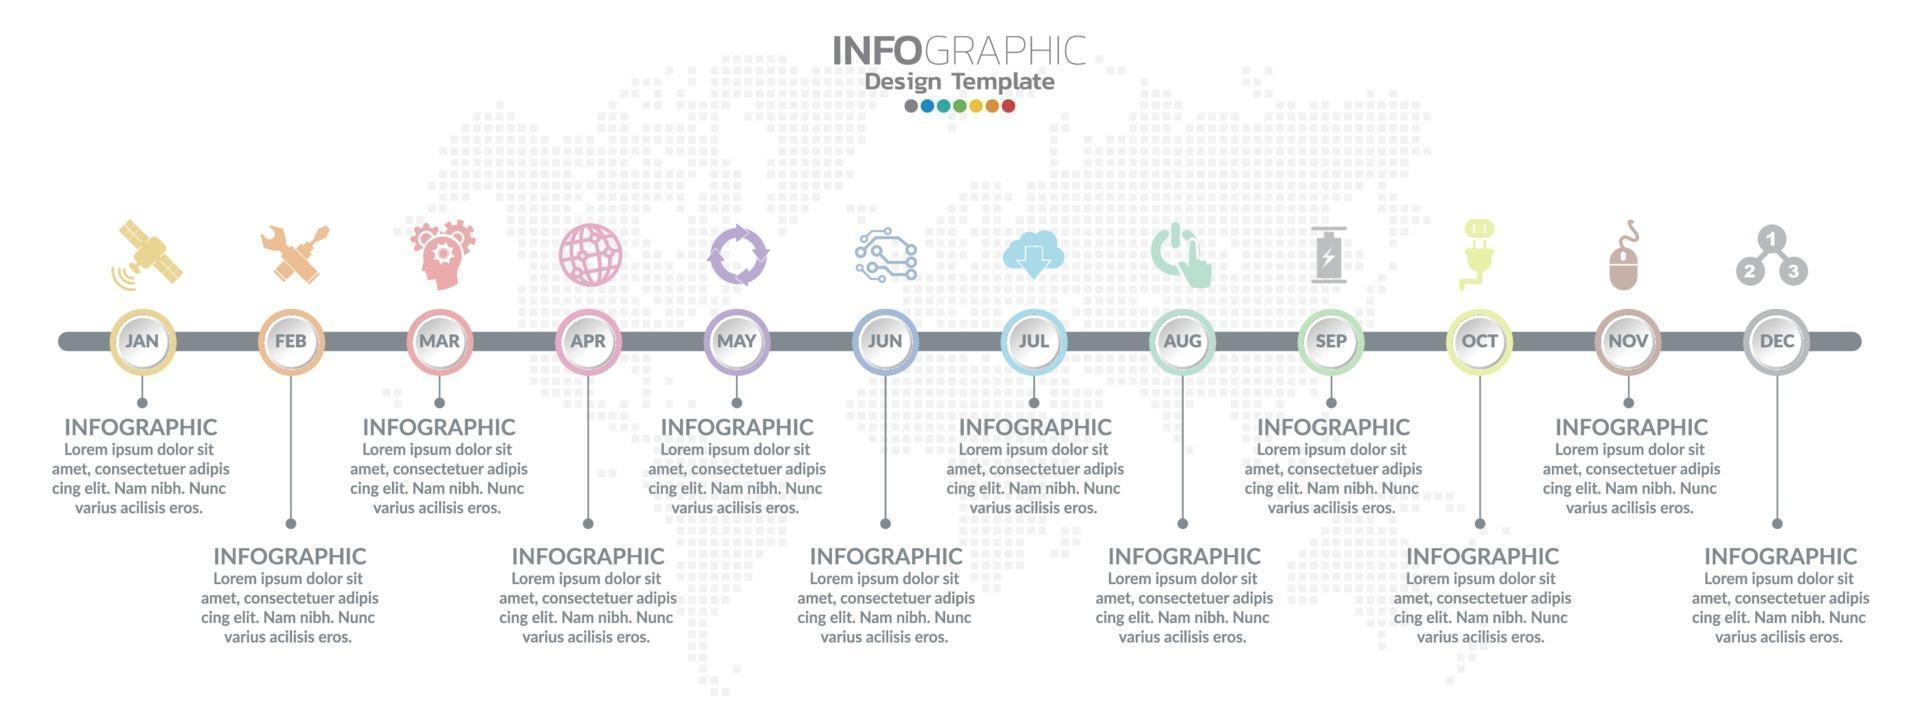 Diseño de infografías de línea de tiempo durante 12 meses con concepto de negocio. vector